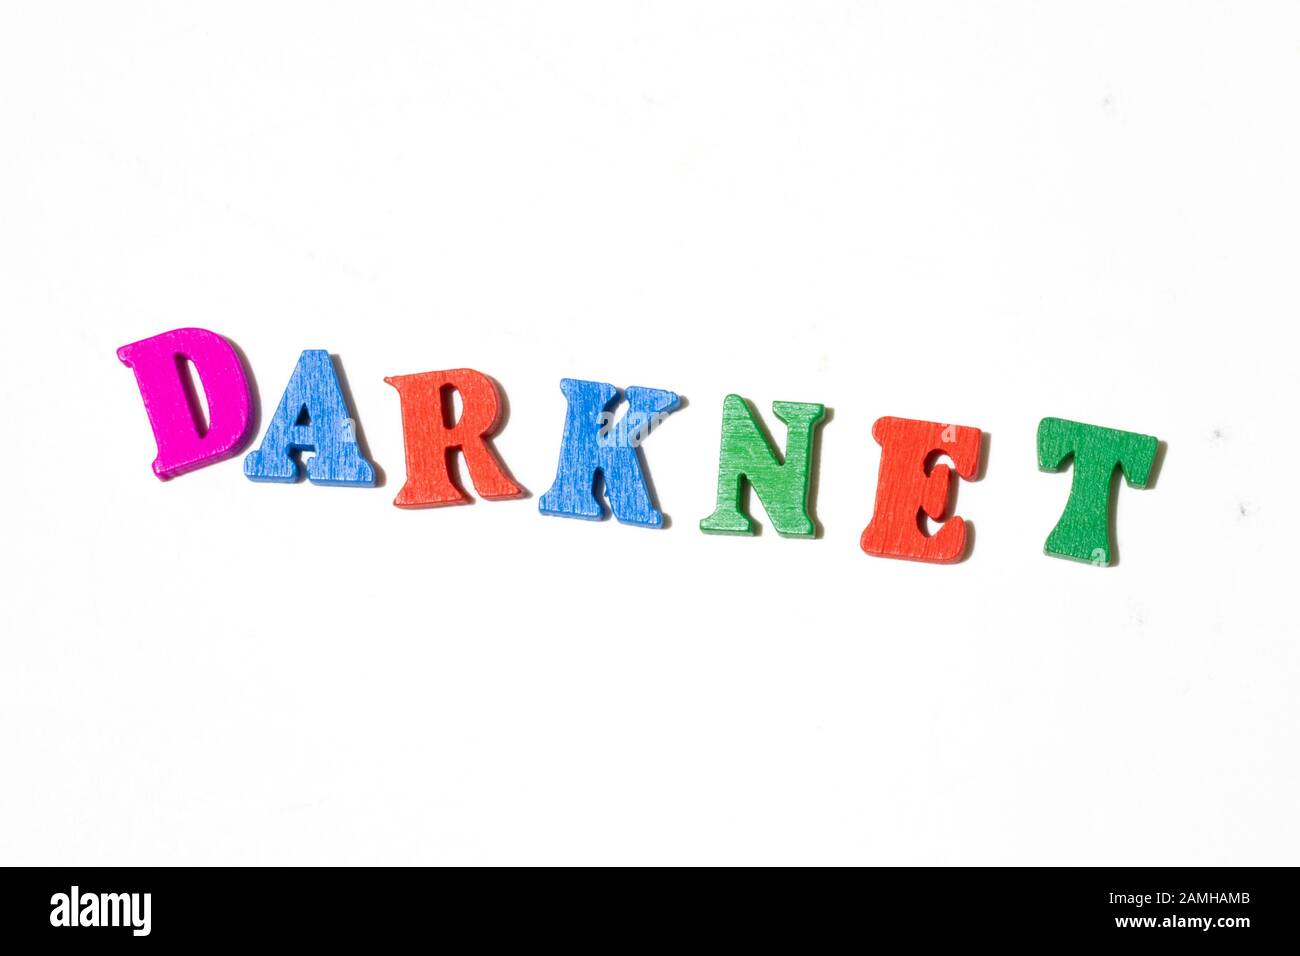 Word Darknet mit Letter Board auf weißem Hintergrund Draufsicht. Kopierbereich Stockfoto